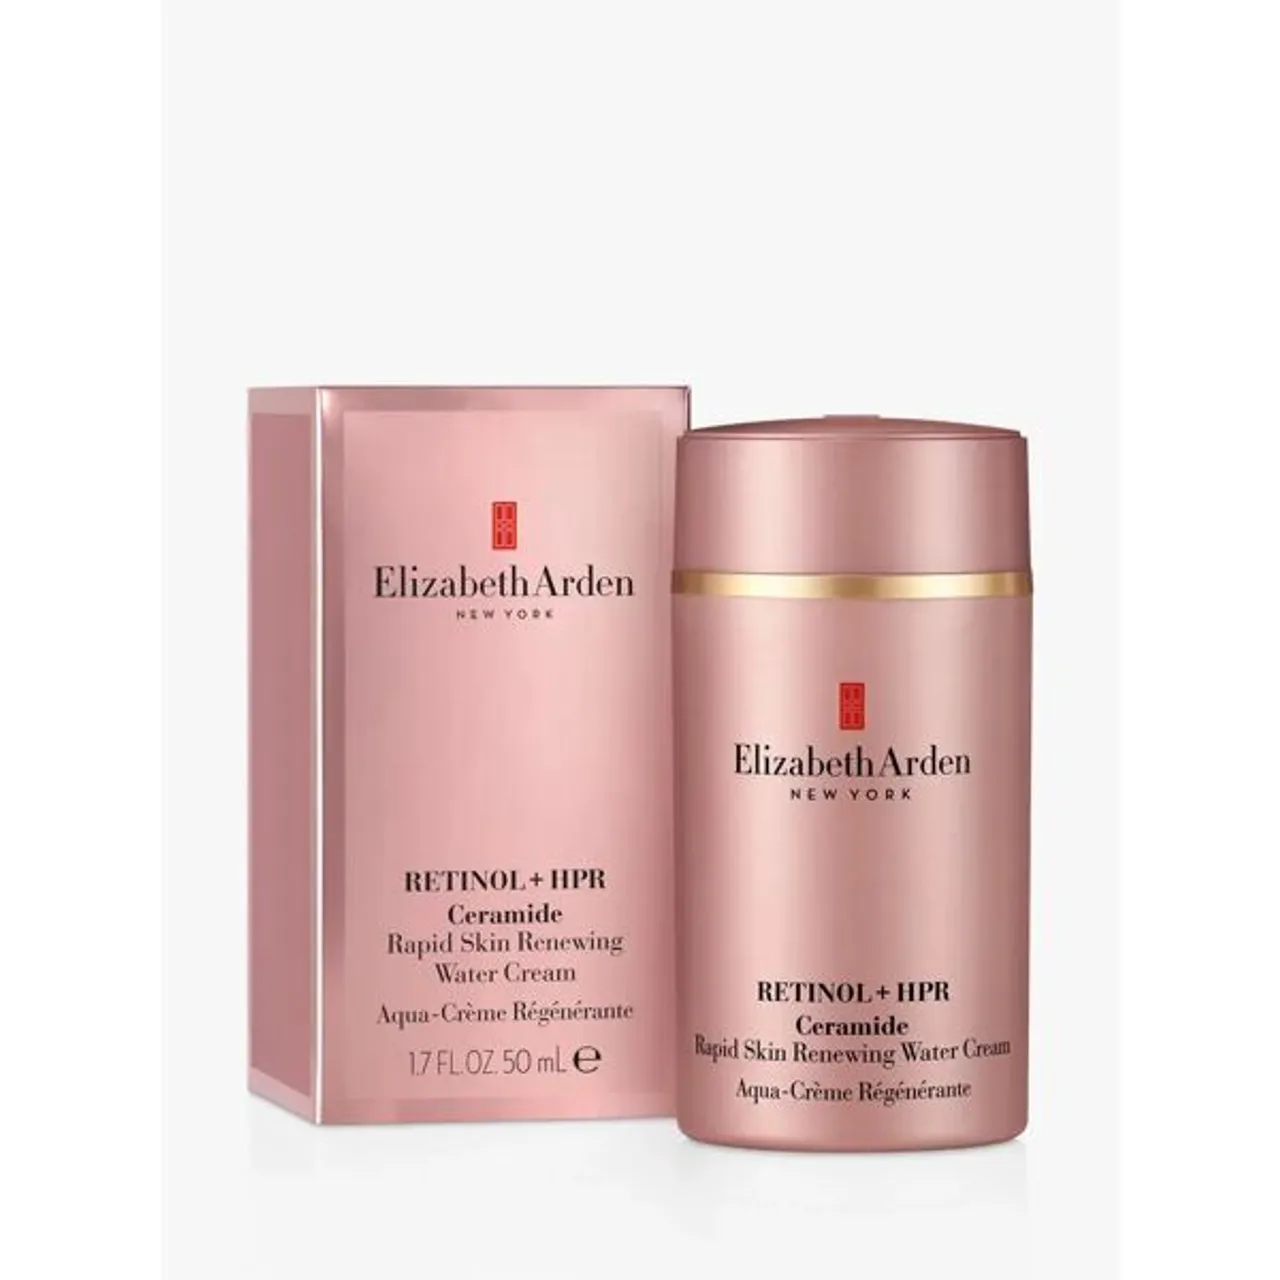 Elisabeth Arden Retinol + HPR Ceramide Rapid Skin-Renewing Water Cream, 50ml - Unisex - Size: 50ml